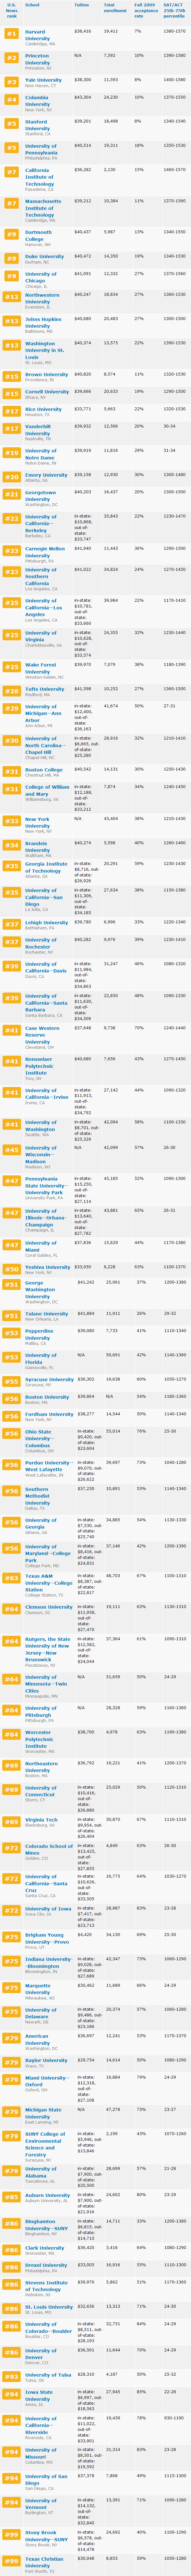 Undergraduate Ranking